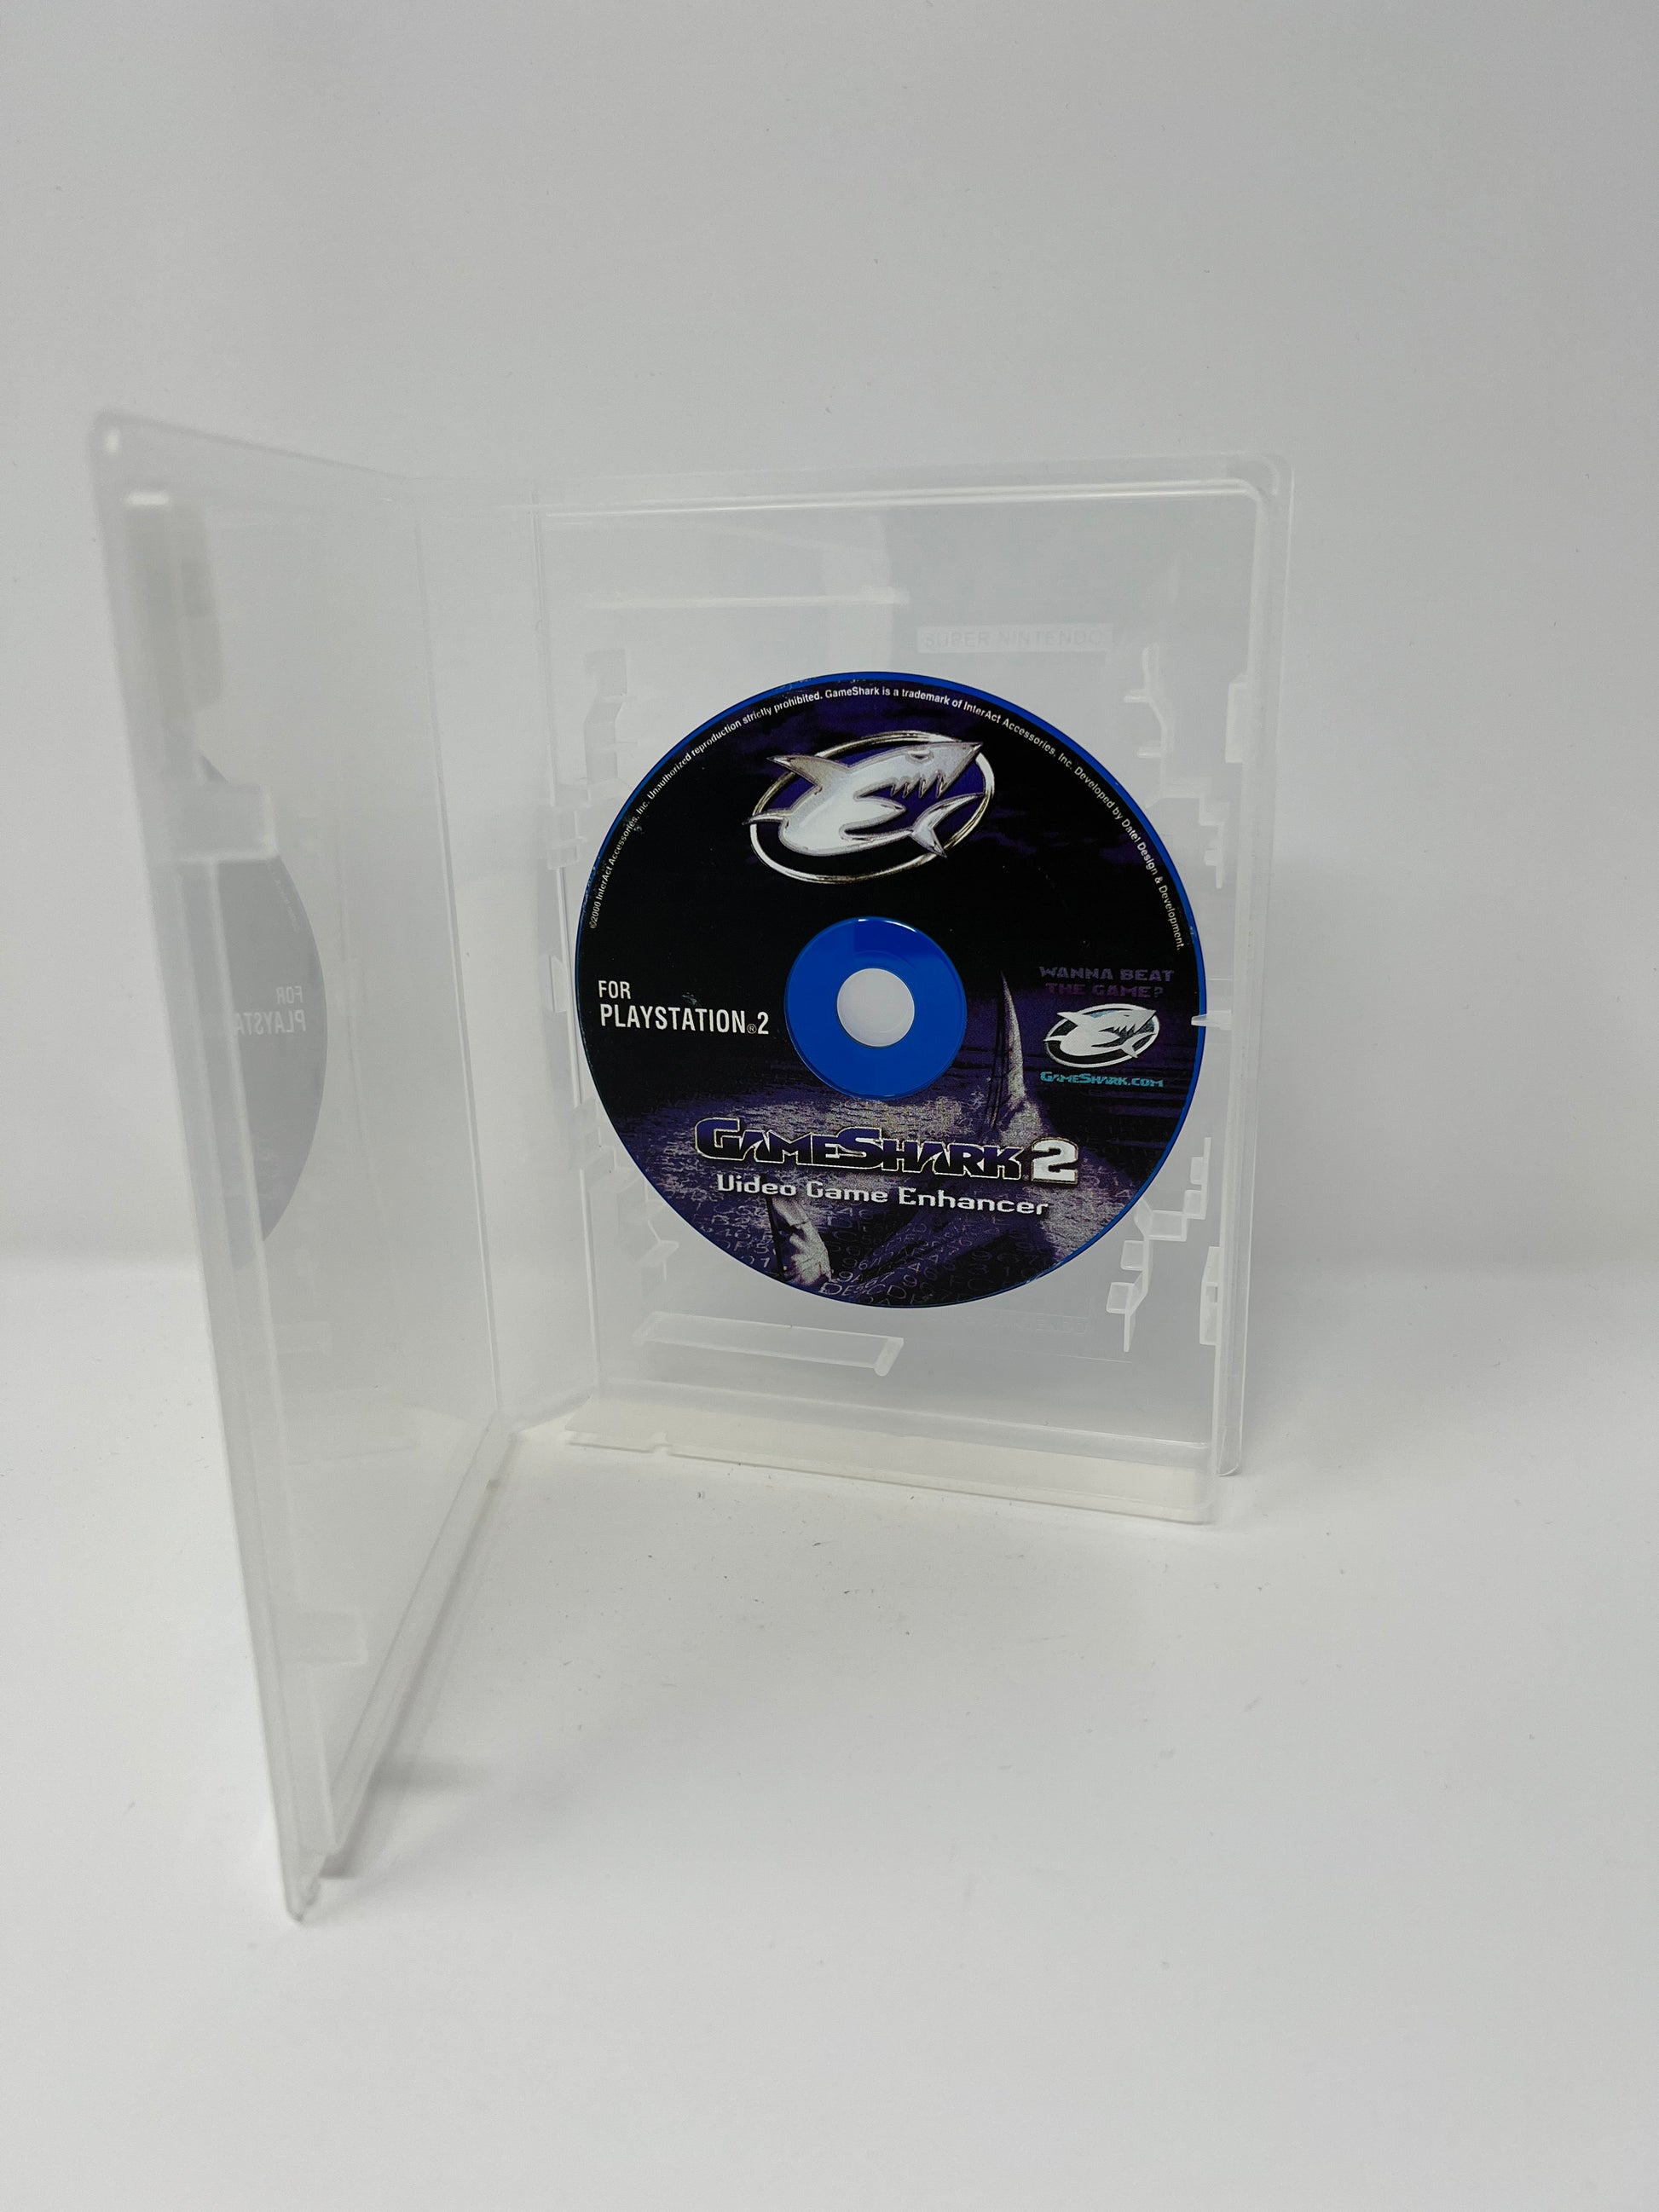  GameShark Video Game Enhancer [Playstation